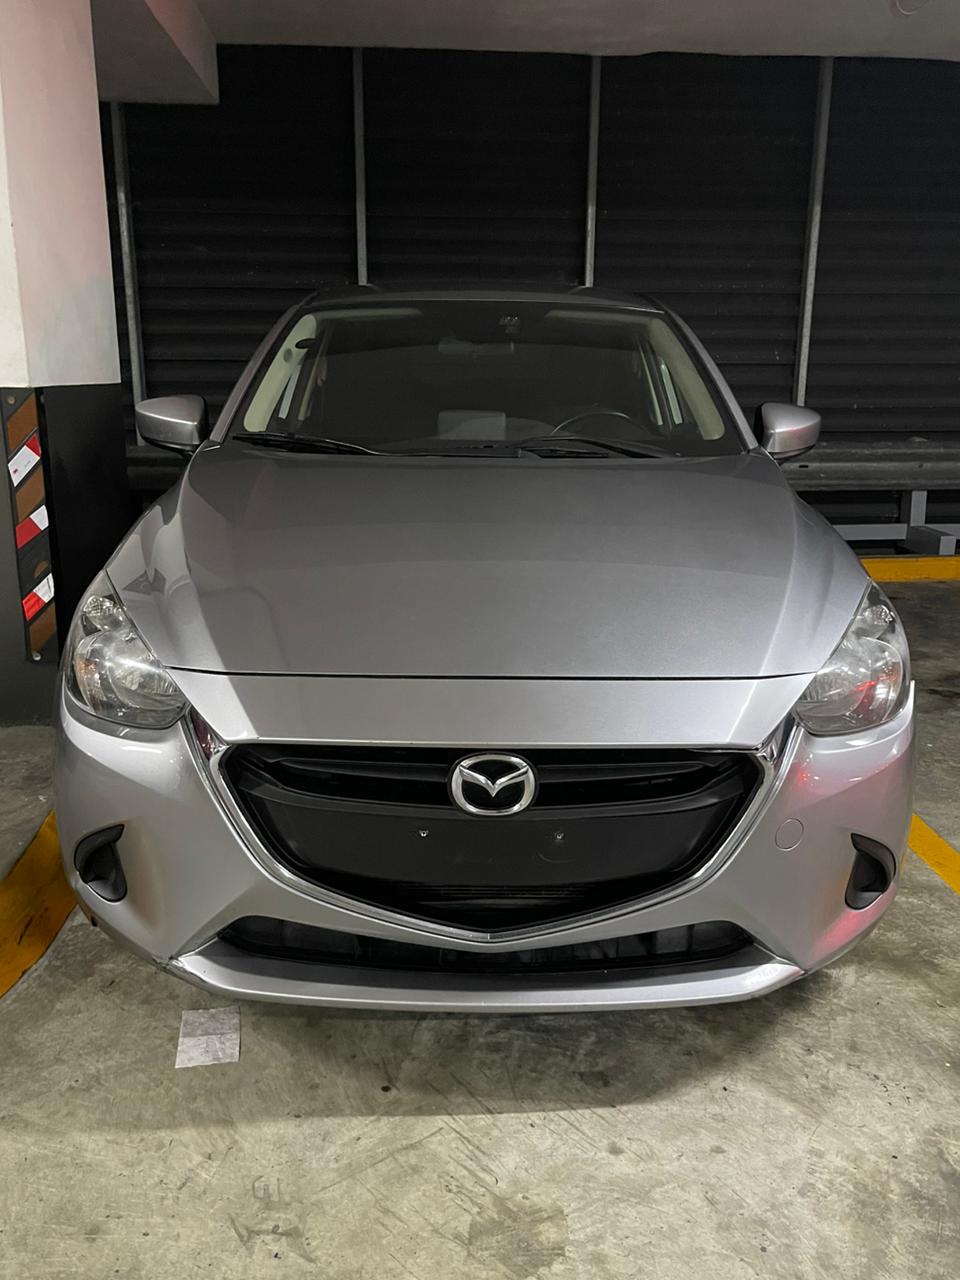 carros - Mazda demio 2016 nitido 1